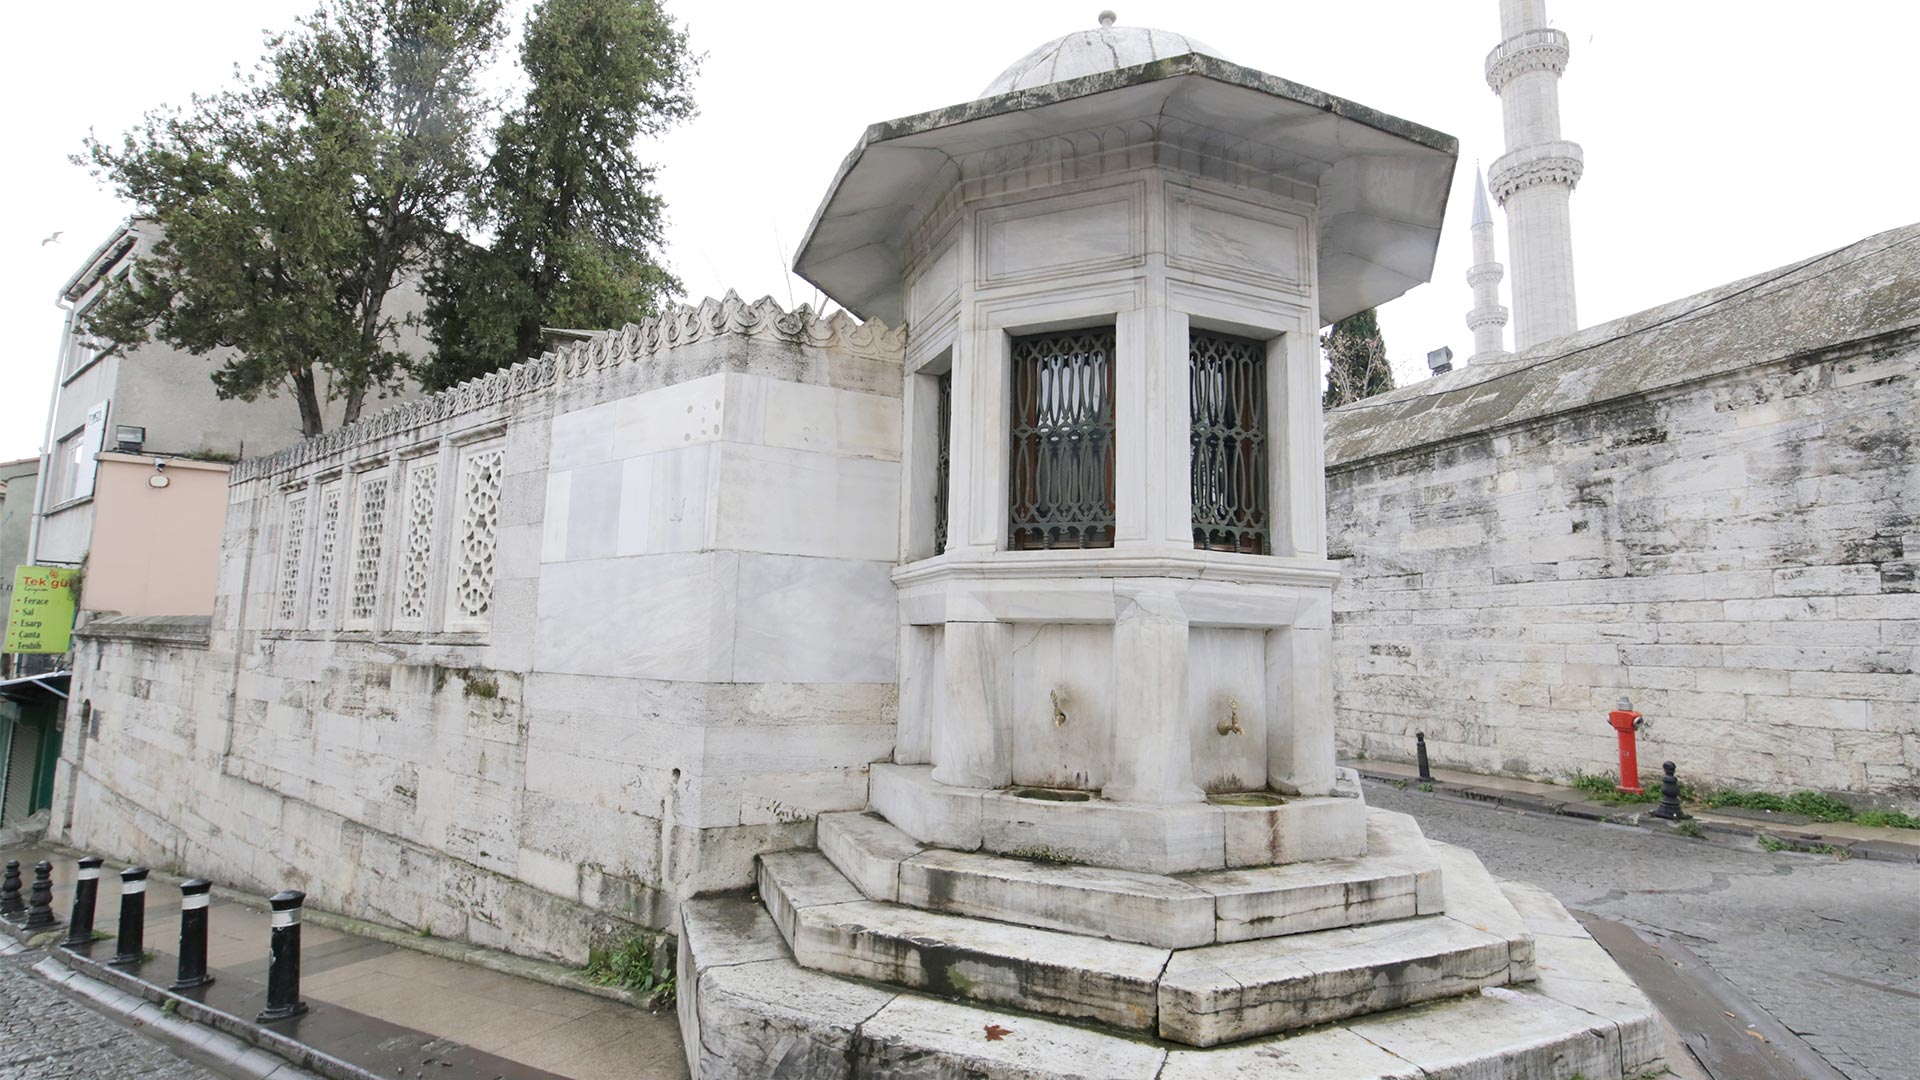 Mimar Sinan Tomb